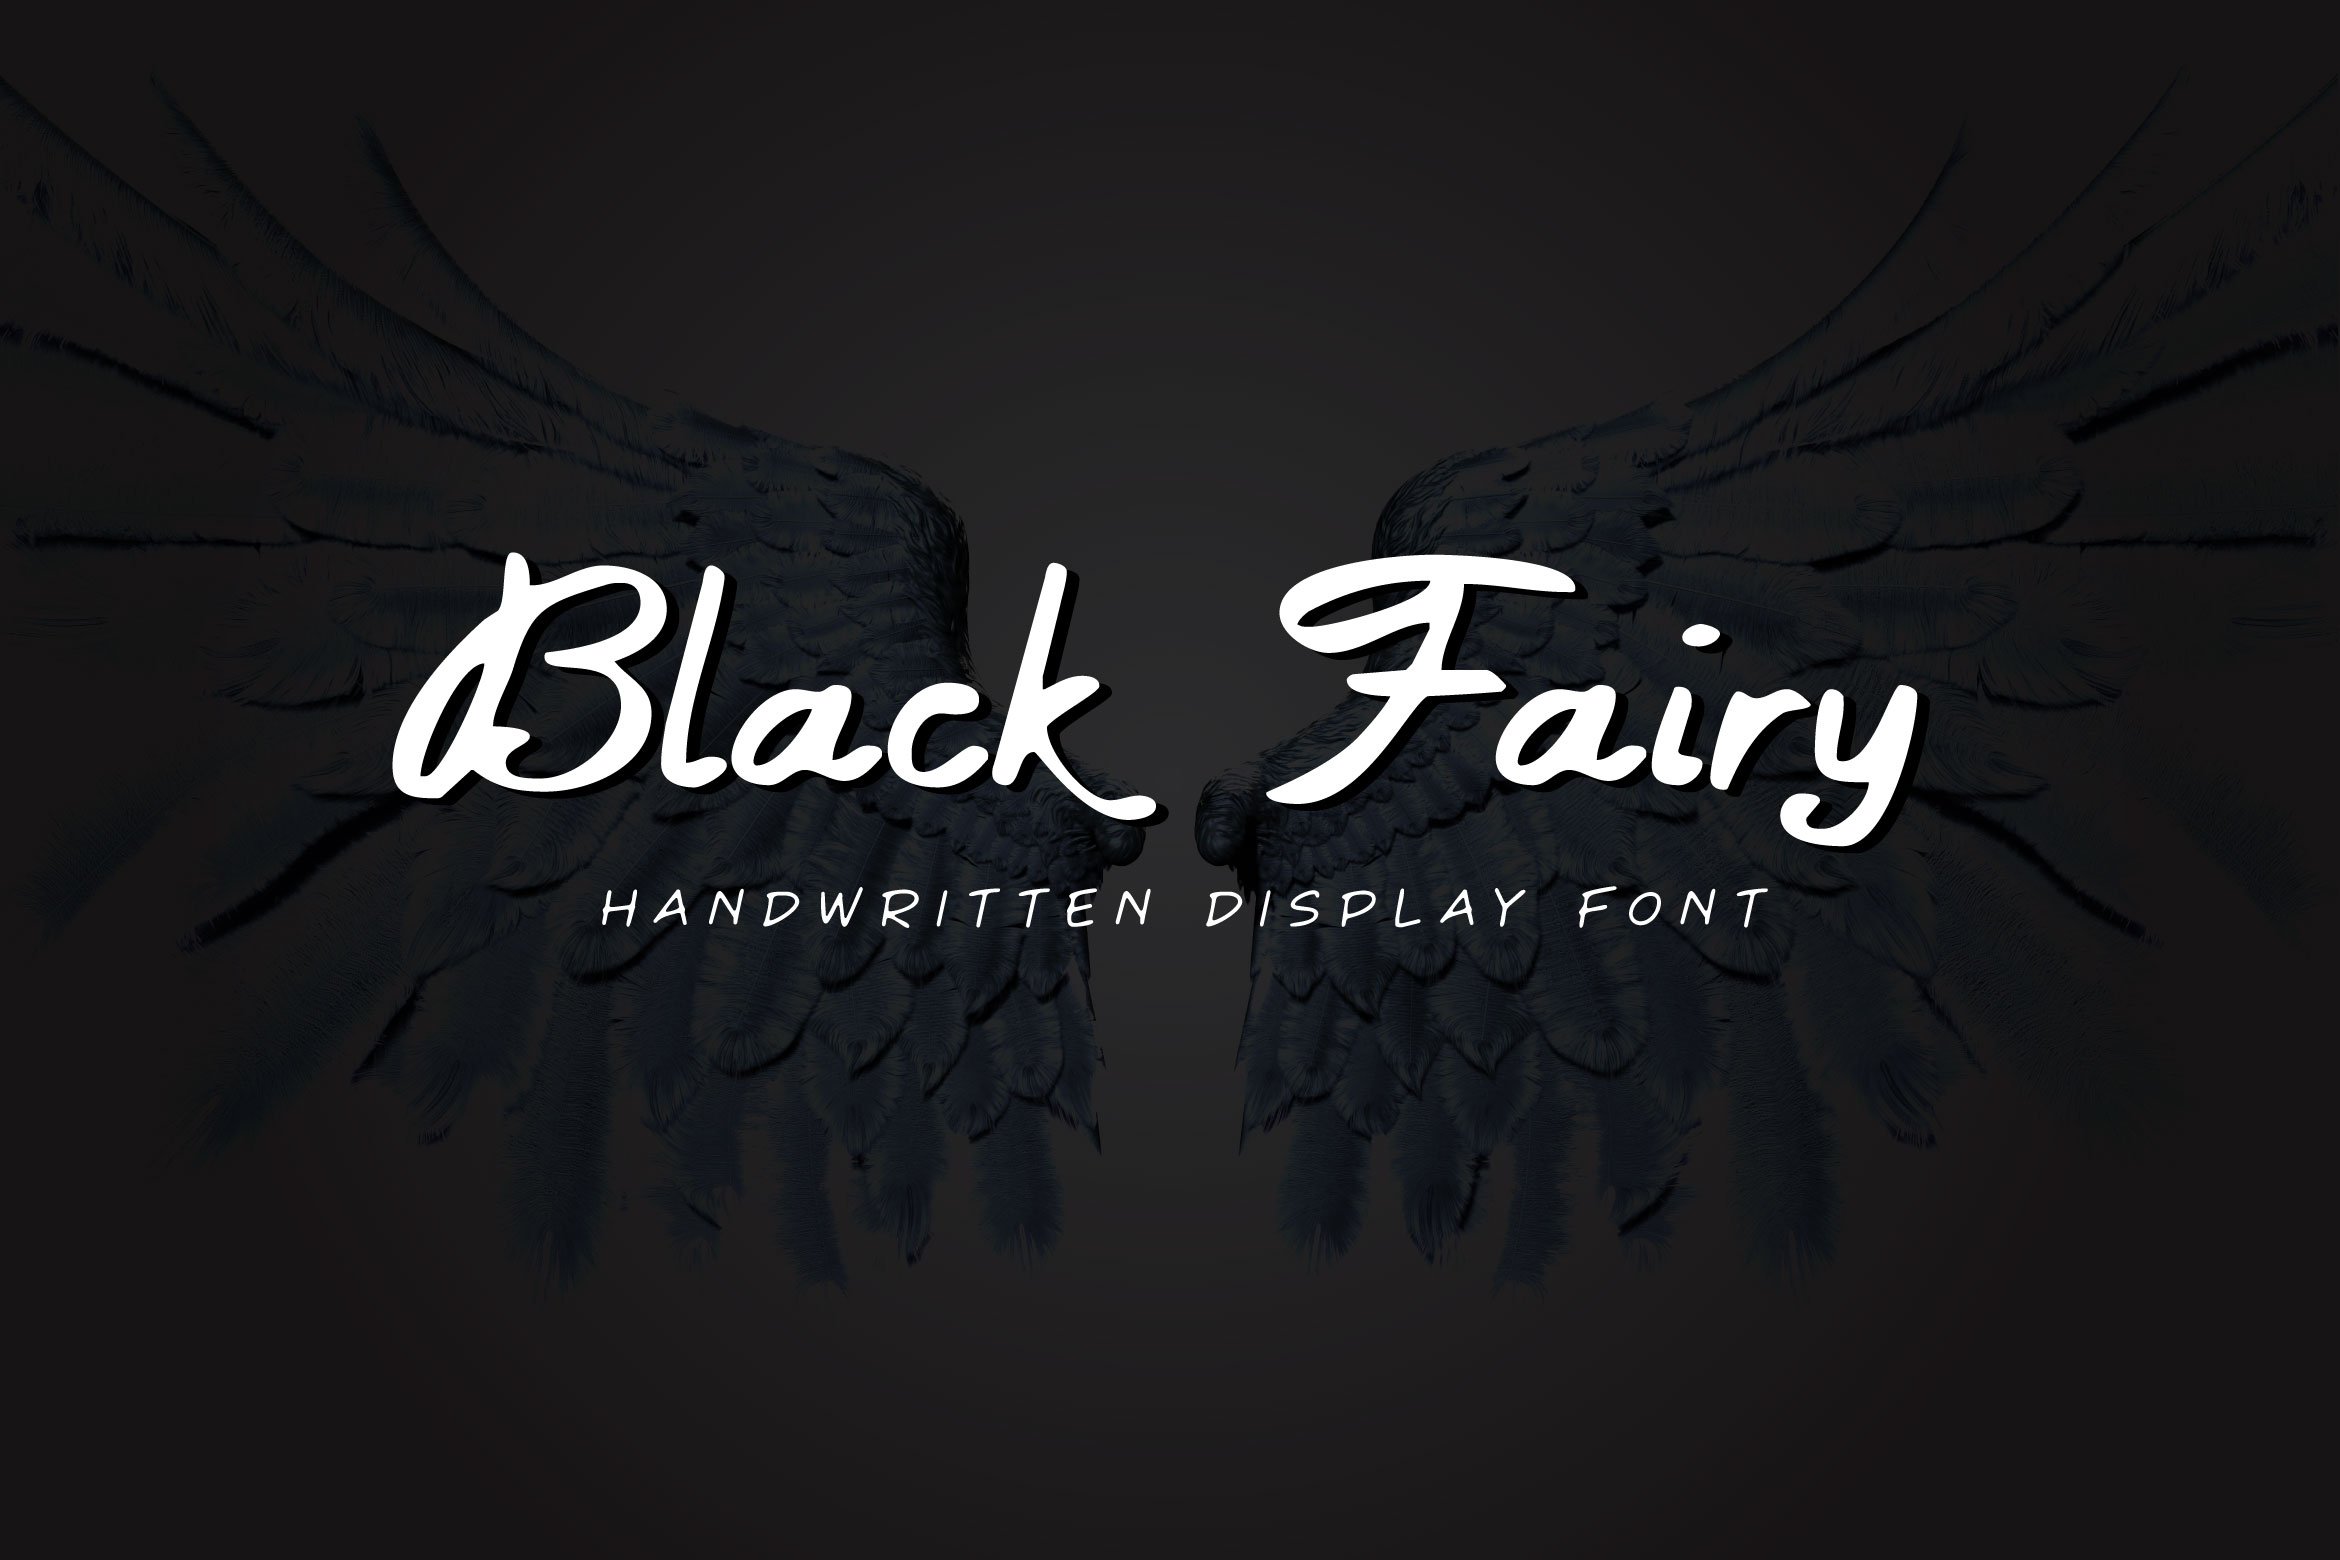 Black Fairy - Script Font cover image.